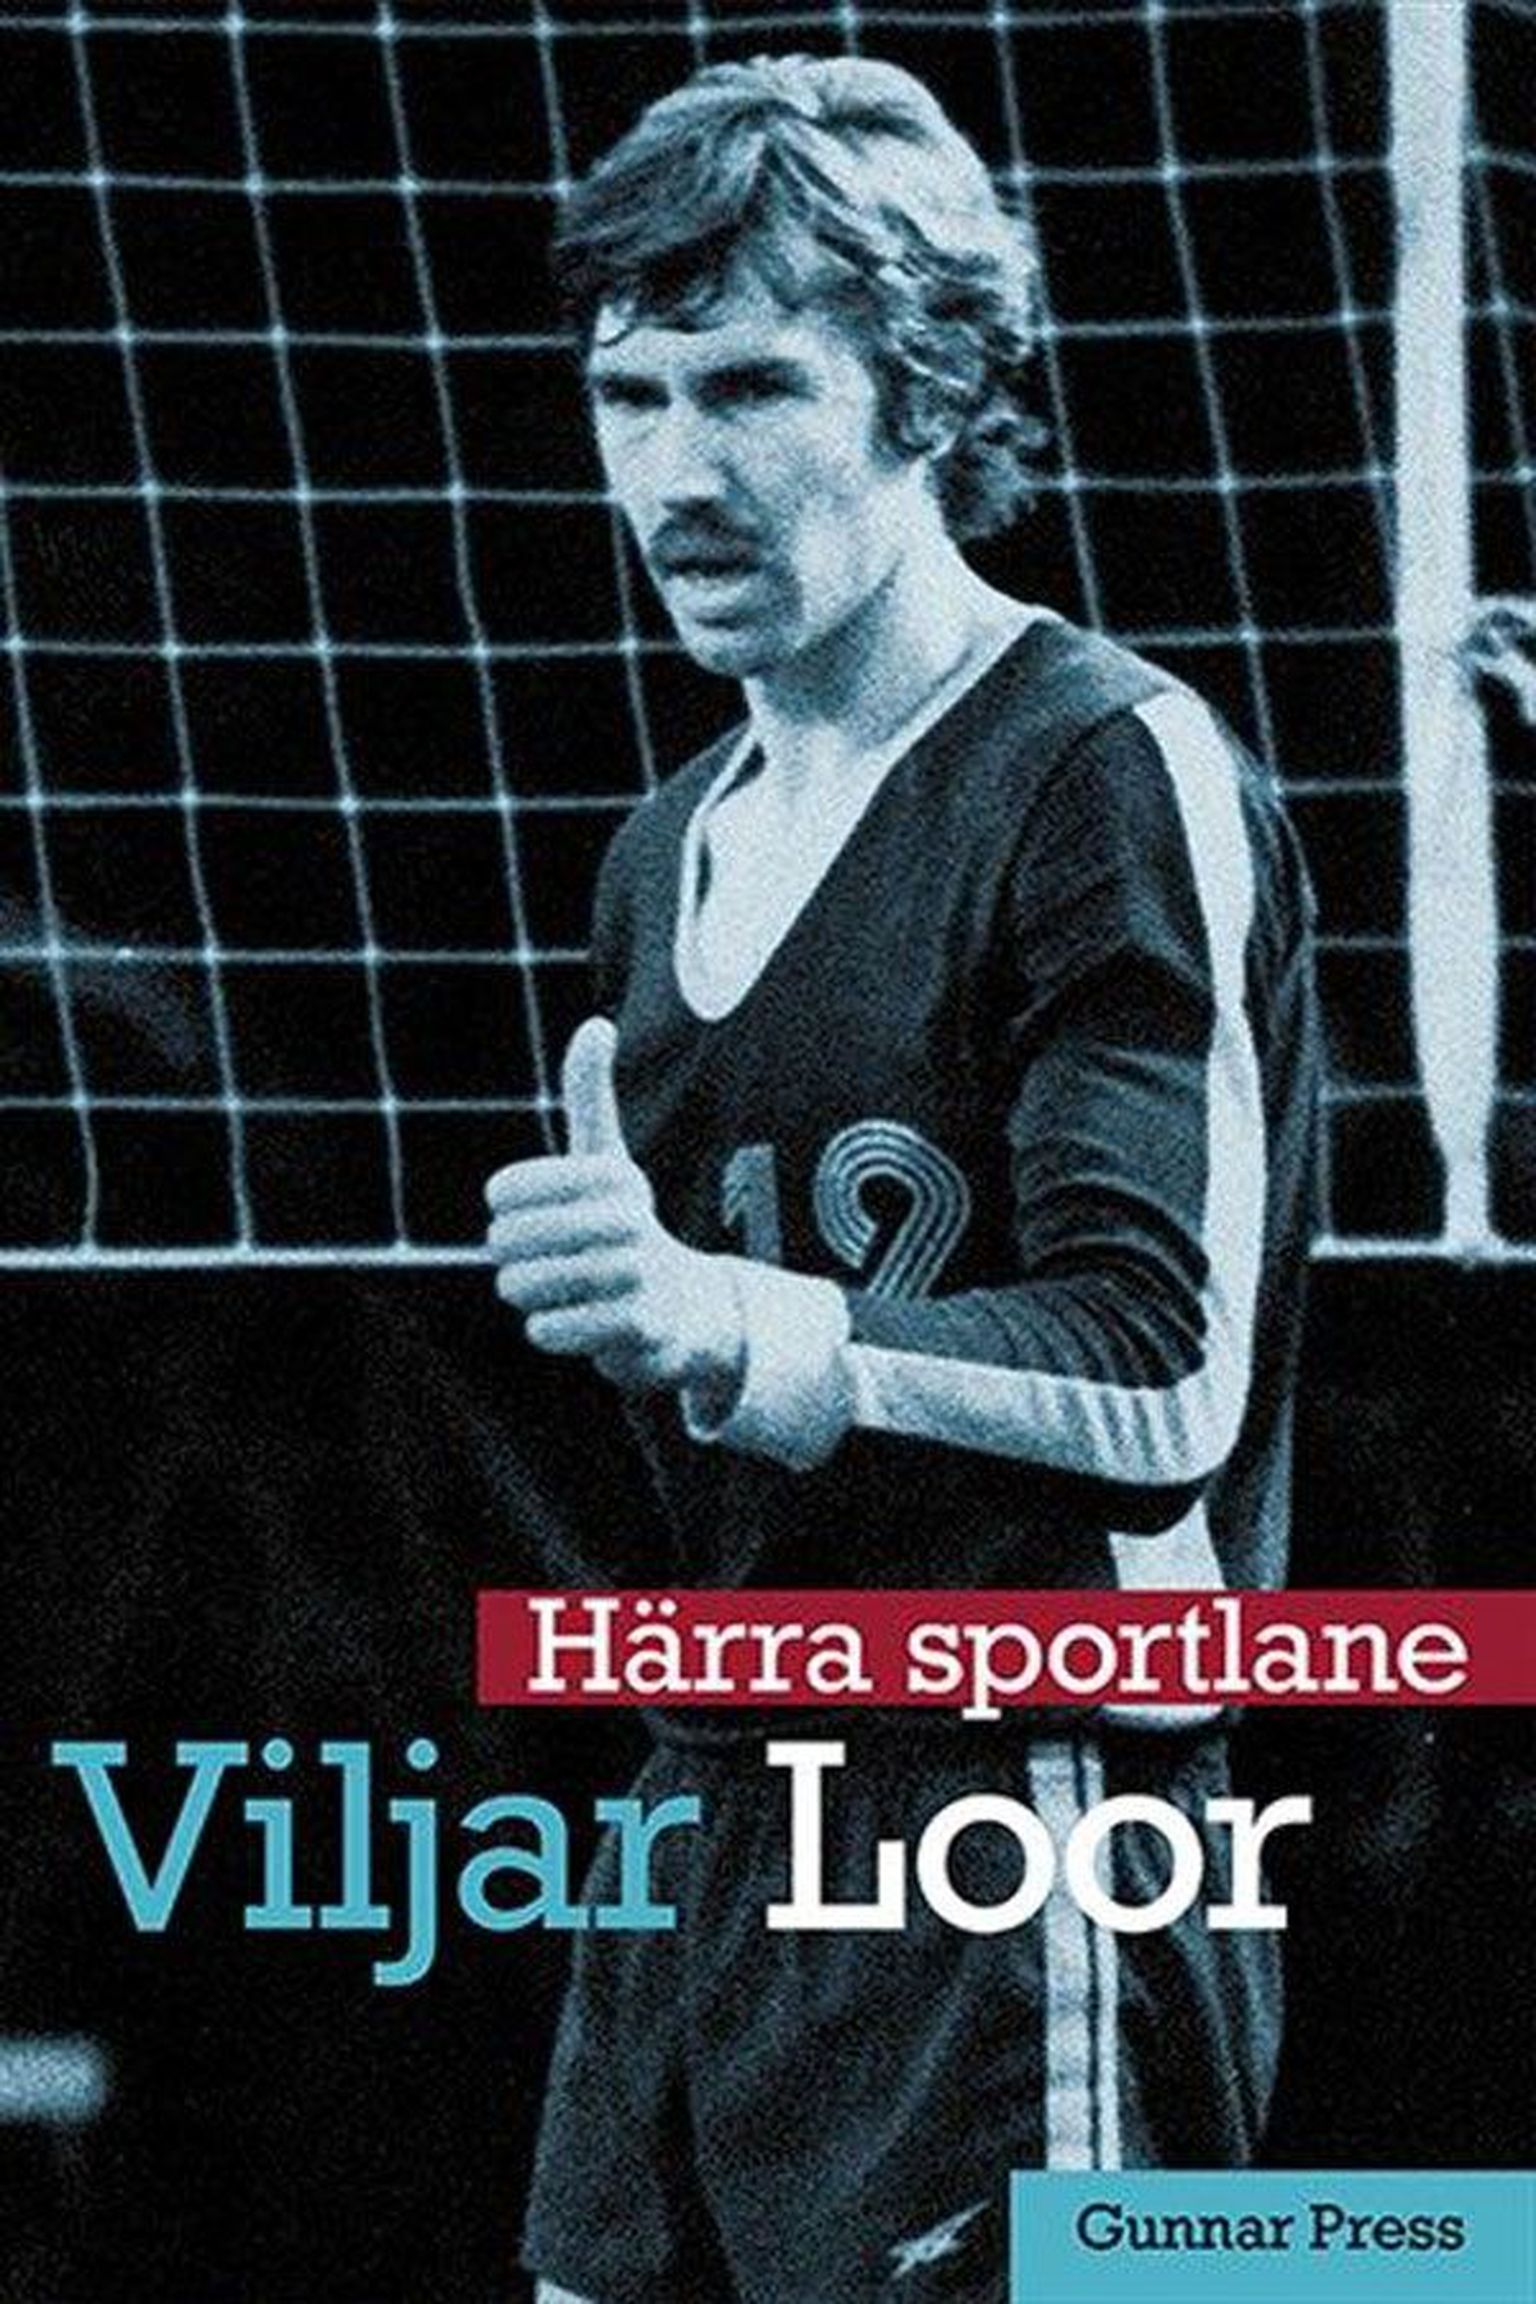 Gunnar Press 
«Härra sportlane 
Viljar Loor»
Menu, 240 lk